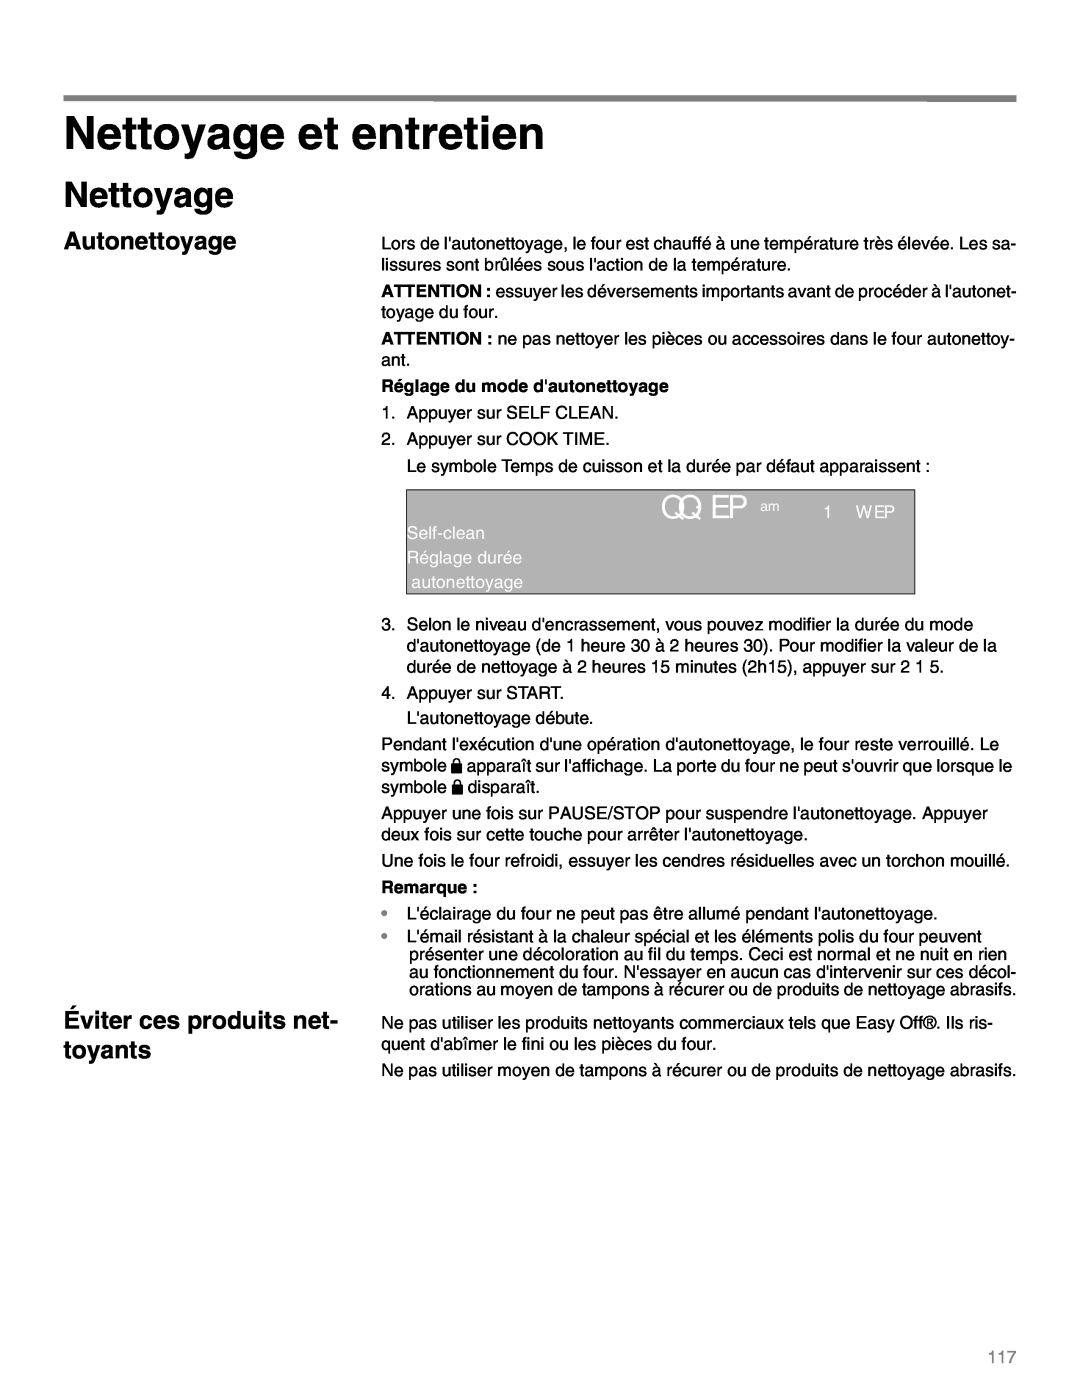 Thermador M301E, M271E manual Nettoyage et entretien, QQ: EP am 1 W: EP, Réglage du mode dautonettoyage, Remarque 